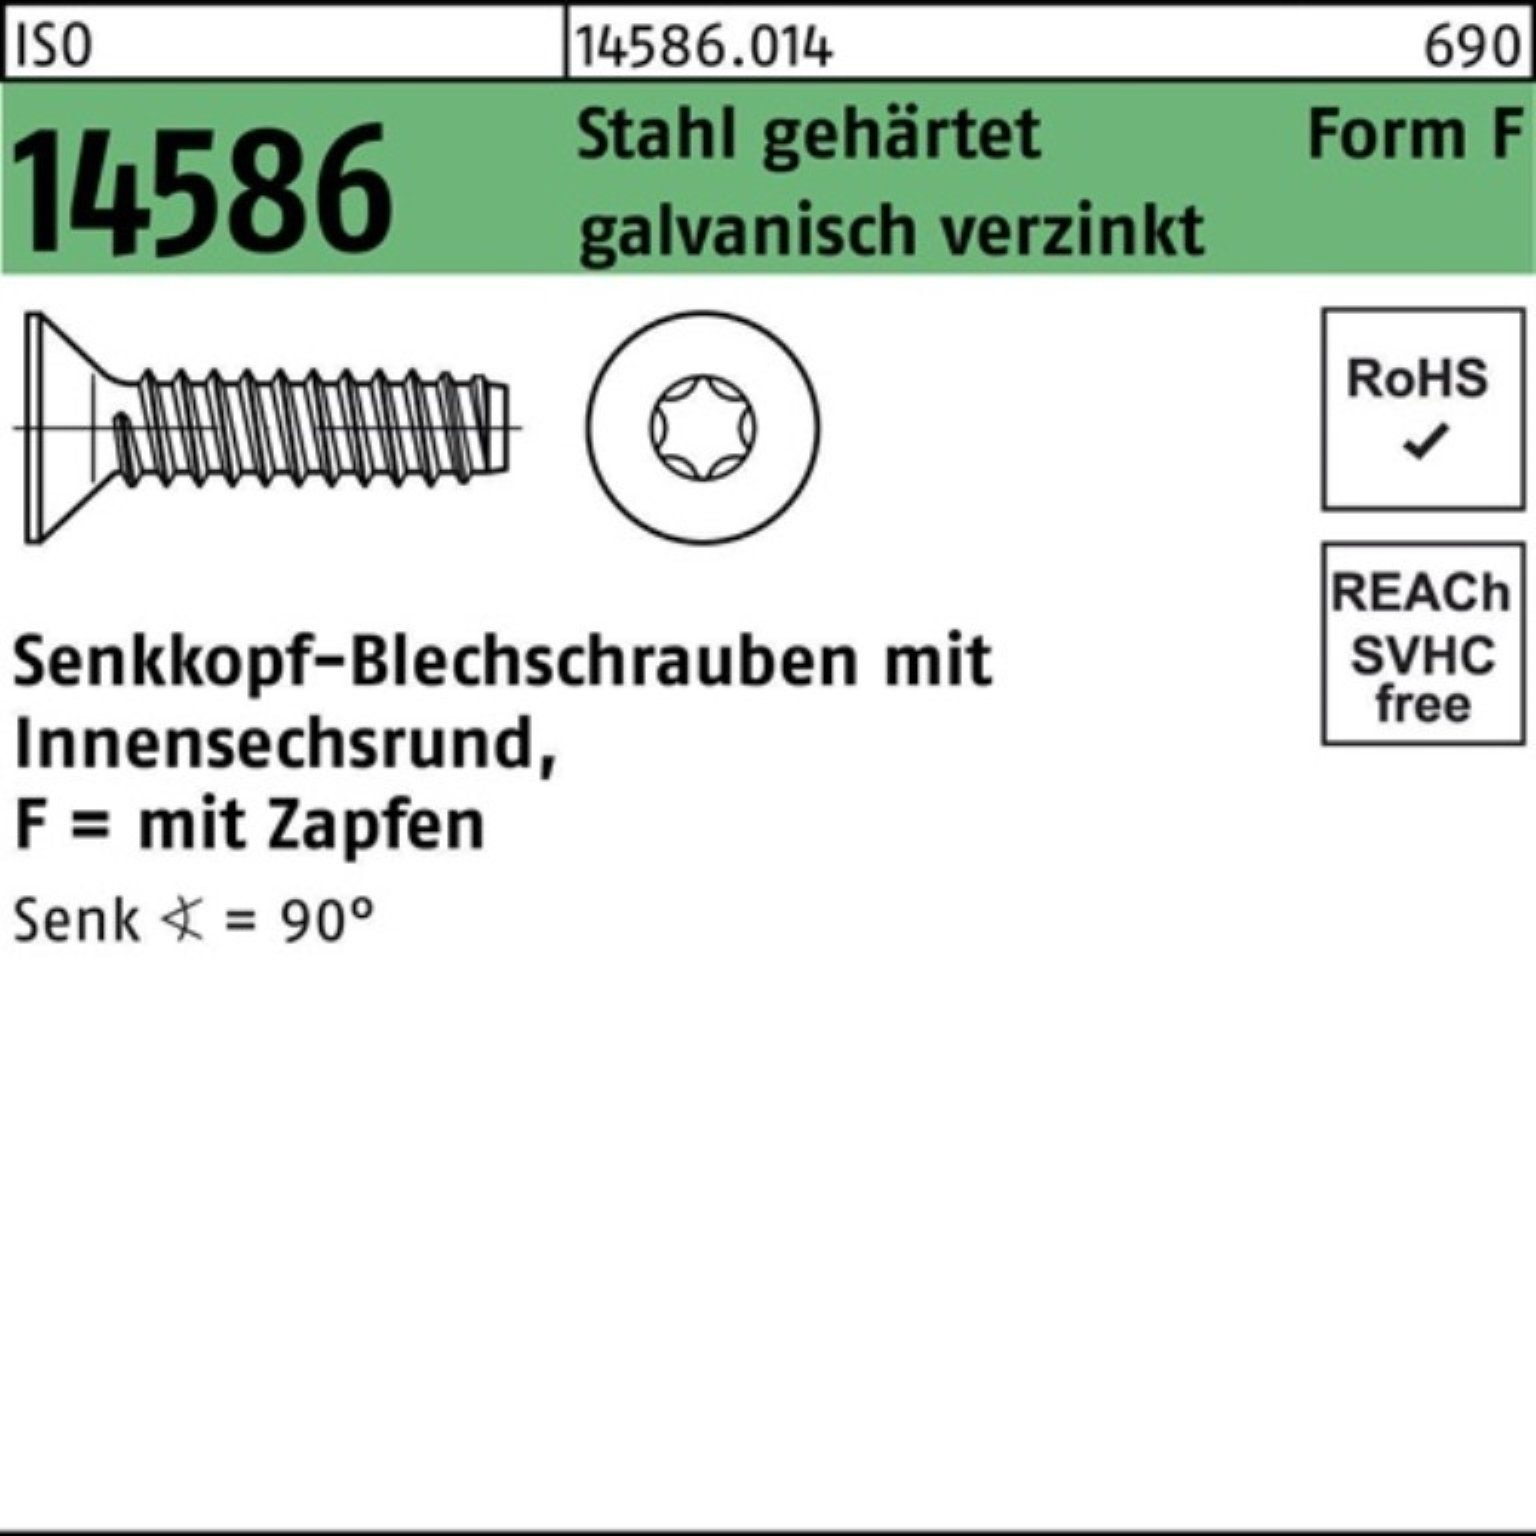 Reyher Schraube 250er Senkblechschraube Stahl Pack 14586 ISO geh. ISR/Zapfen 5,5x38 -F